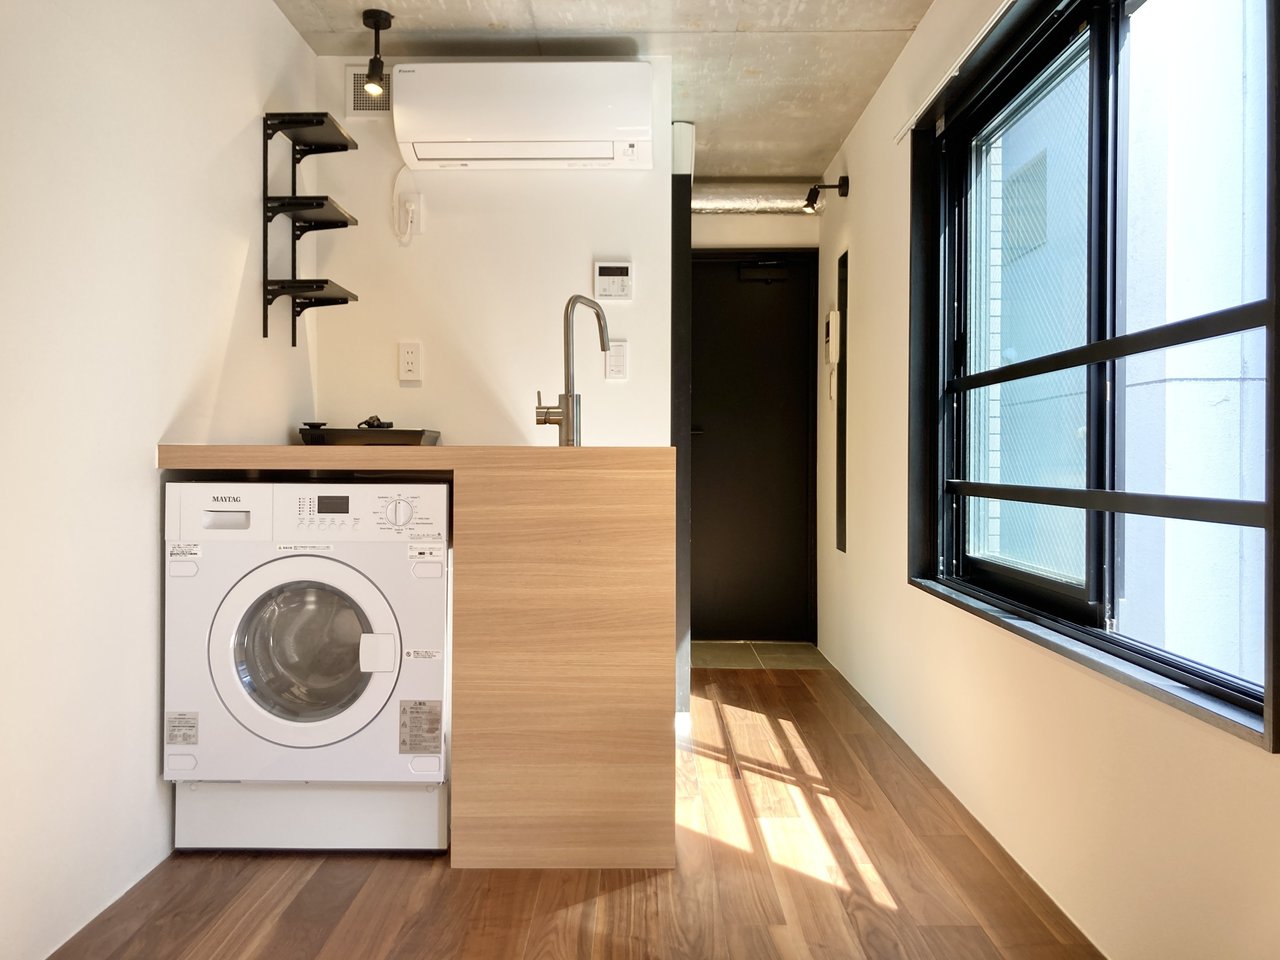 ドラム式洗濯機がキッチンに備え付けられ、スペースが上手く活用されていますね。